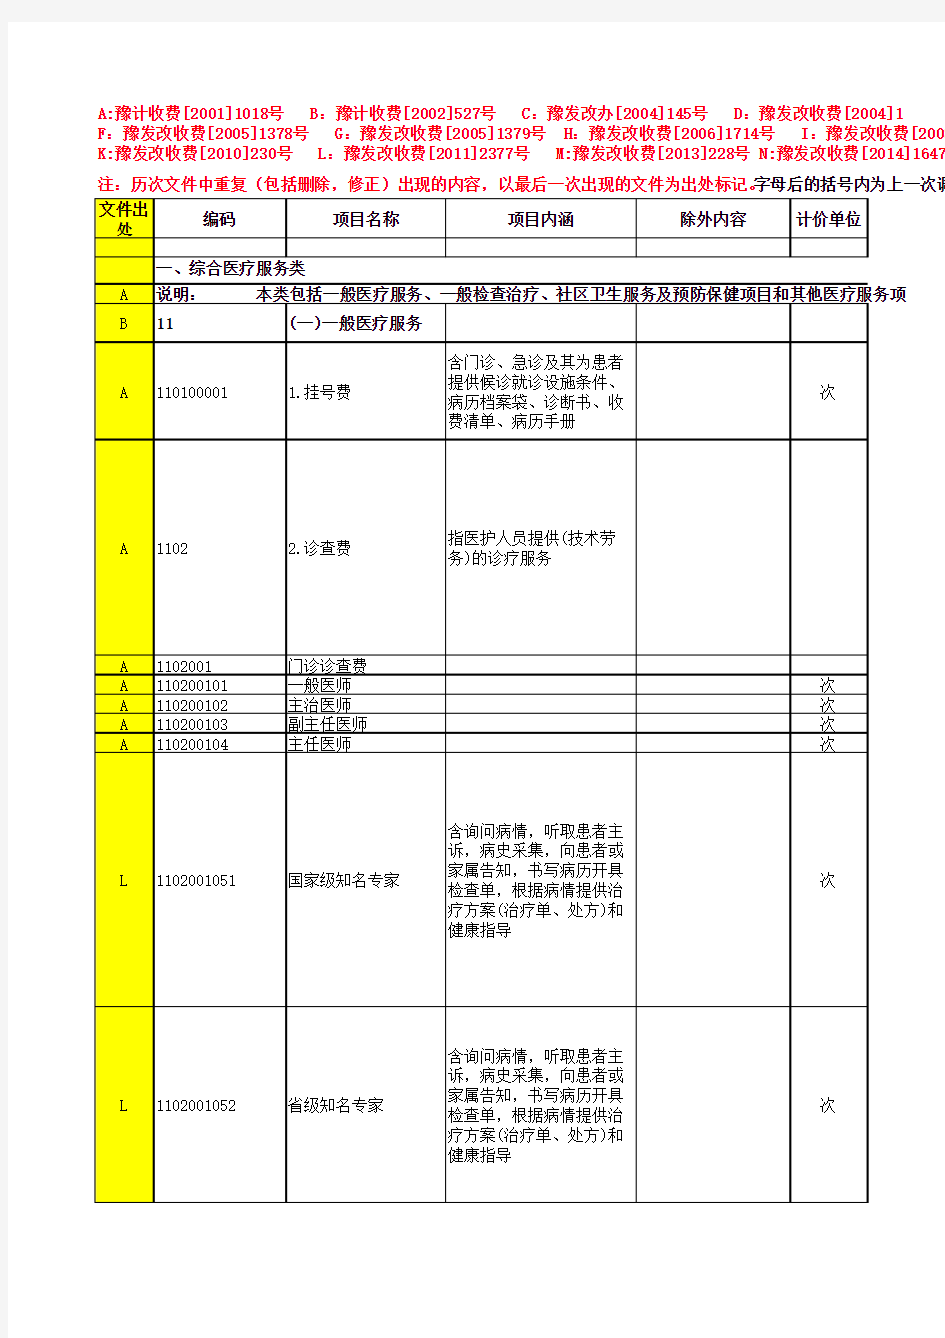 2014版河南医疗服务价格(带文件号).xls